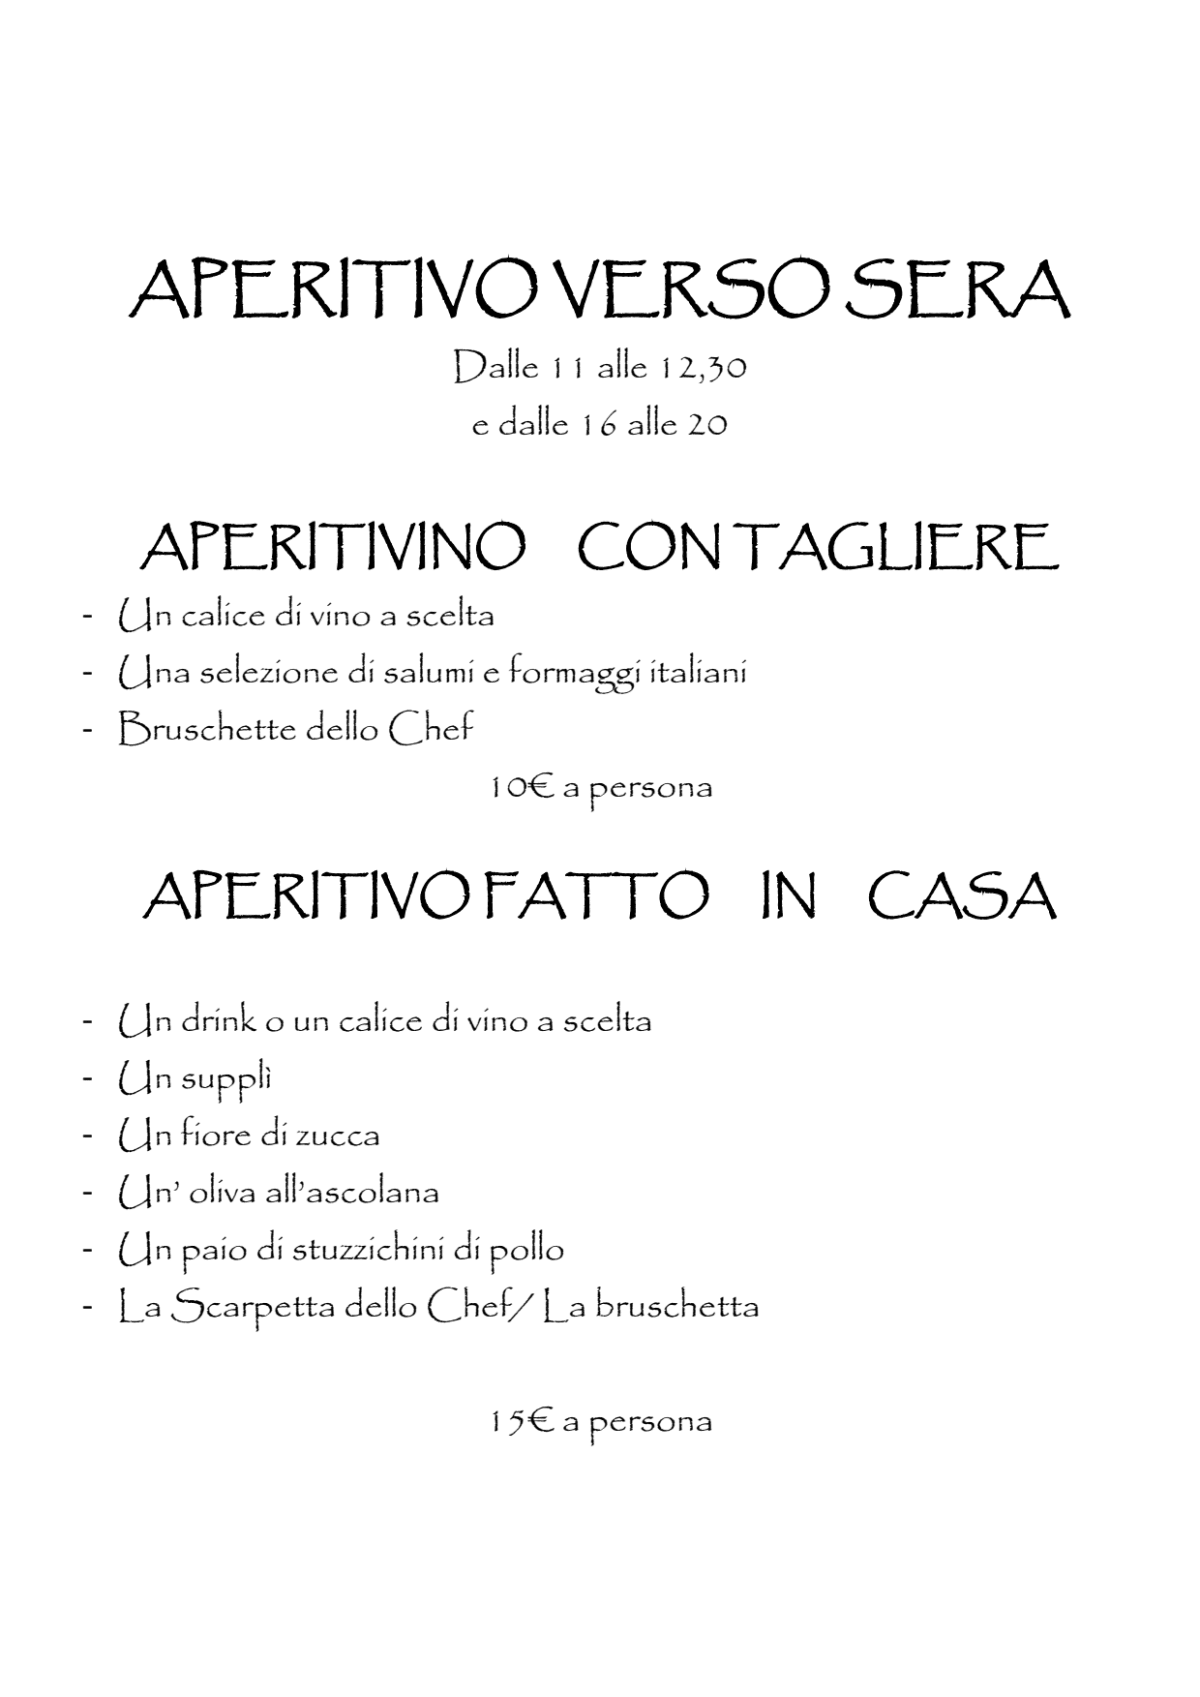 Verso Sera menu